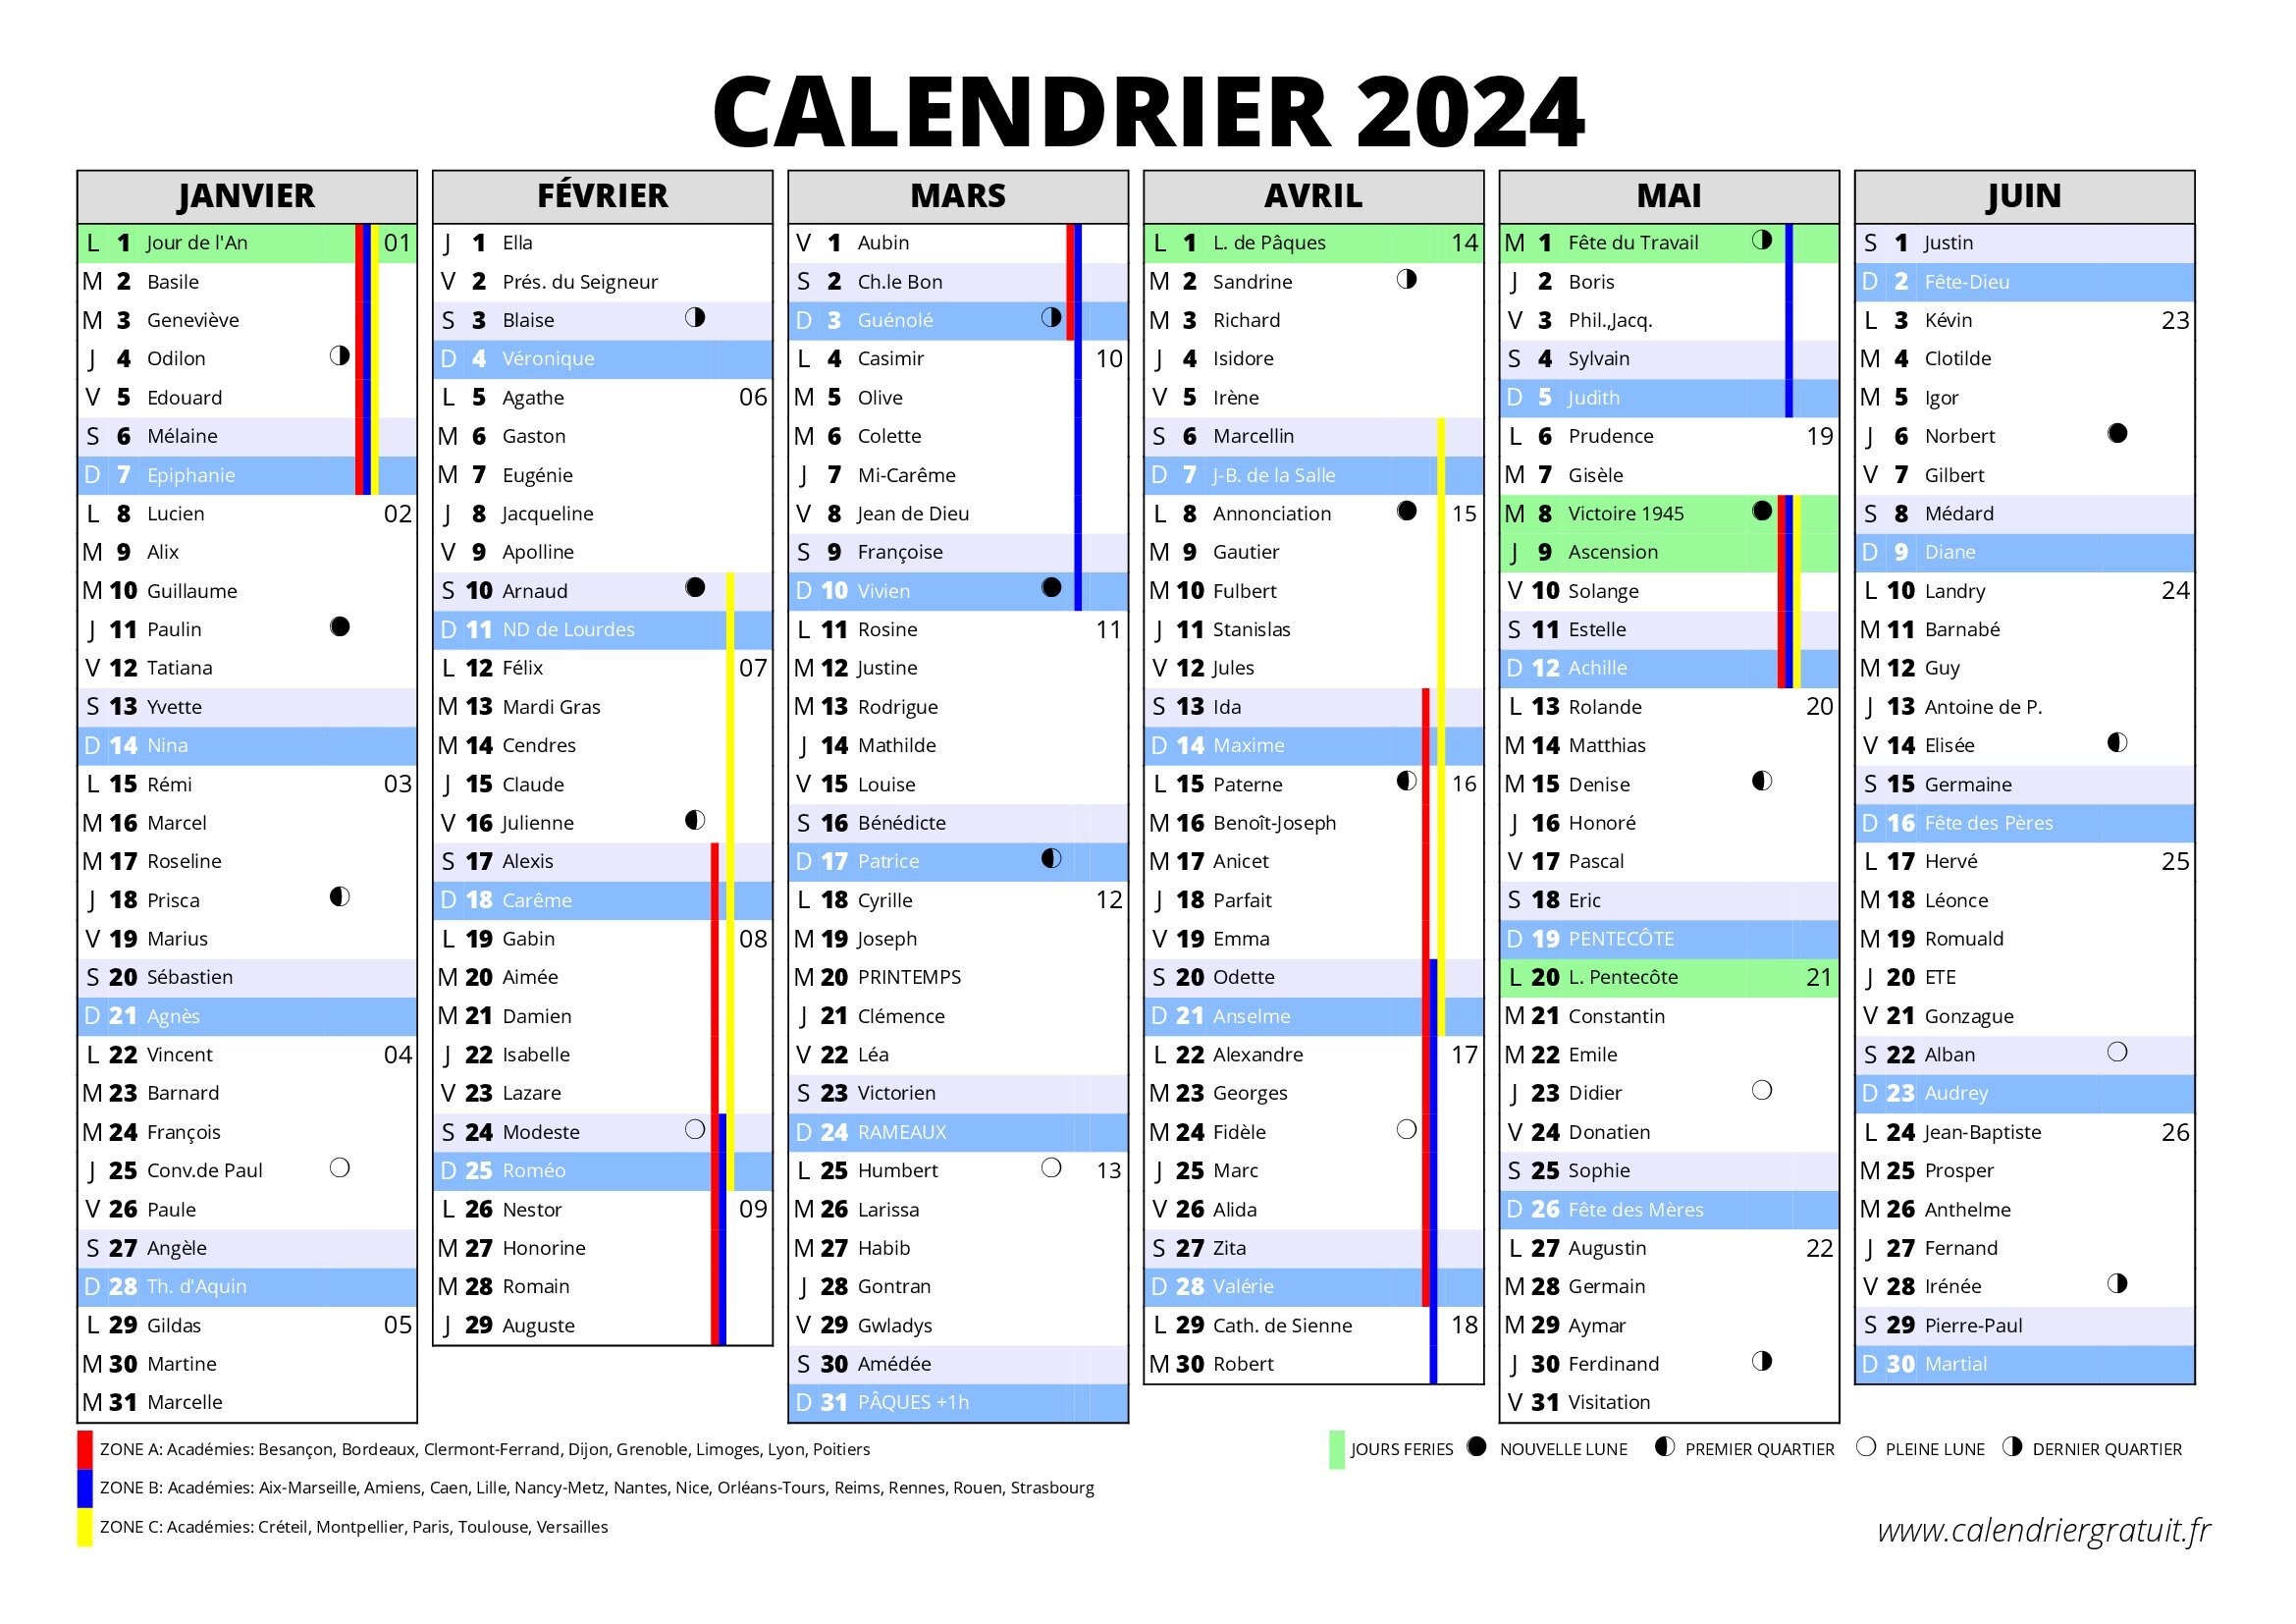 CALENDRIER 2024 PAR MOIS, ANNUEL ET NOEL